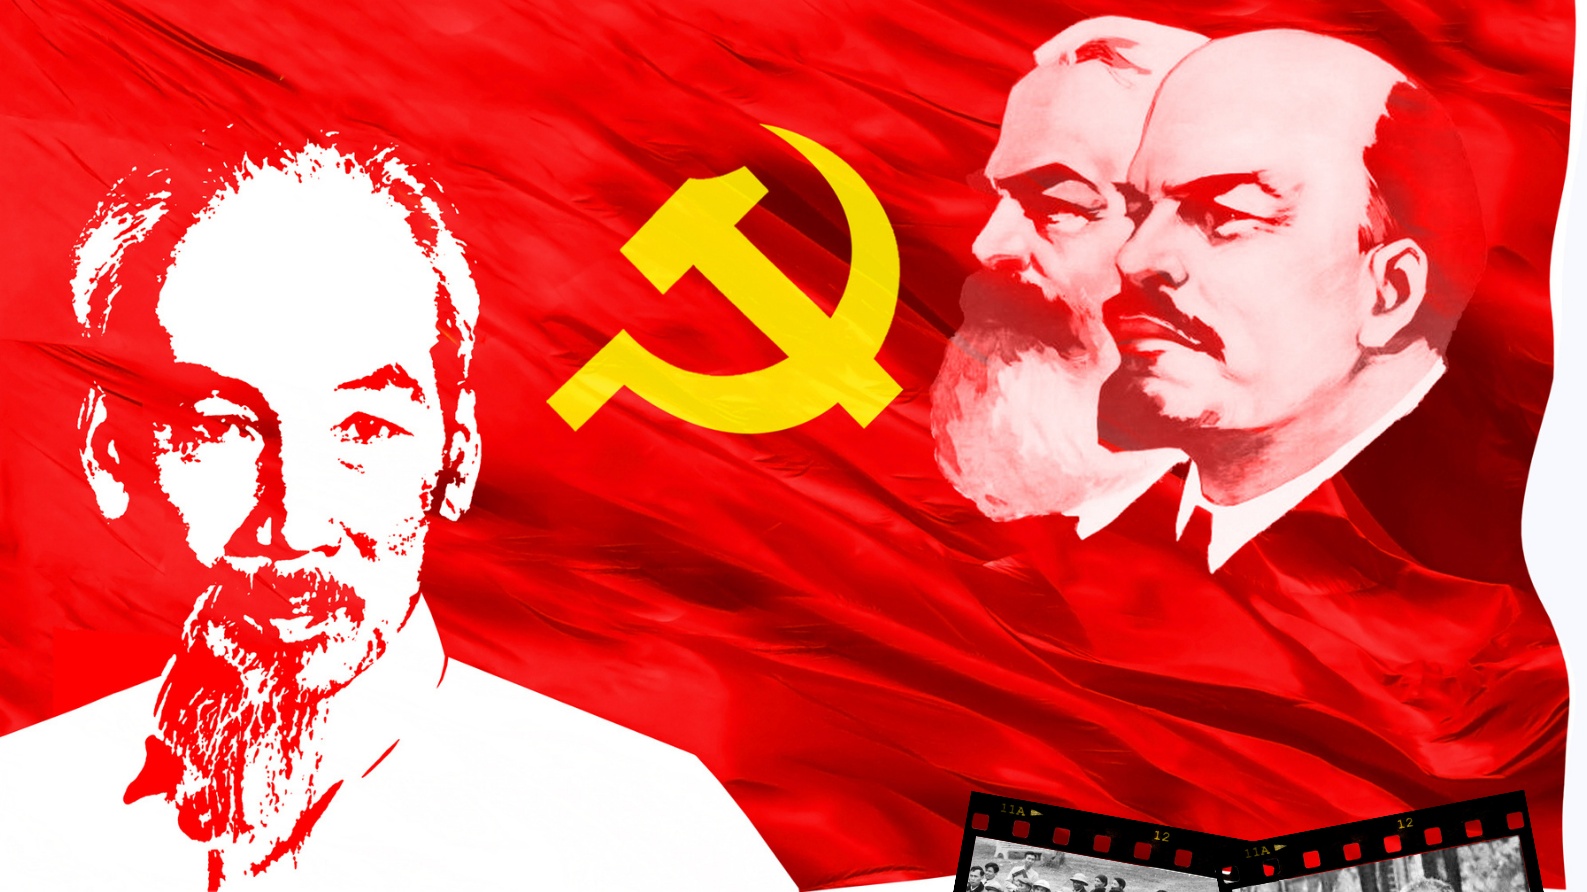 Xây dựng Đảng về chính trị, tư tưởng: Lấy quan điểm của Chủ tịch Hồ Chí Minh làm nòng cốt